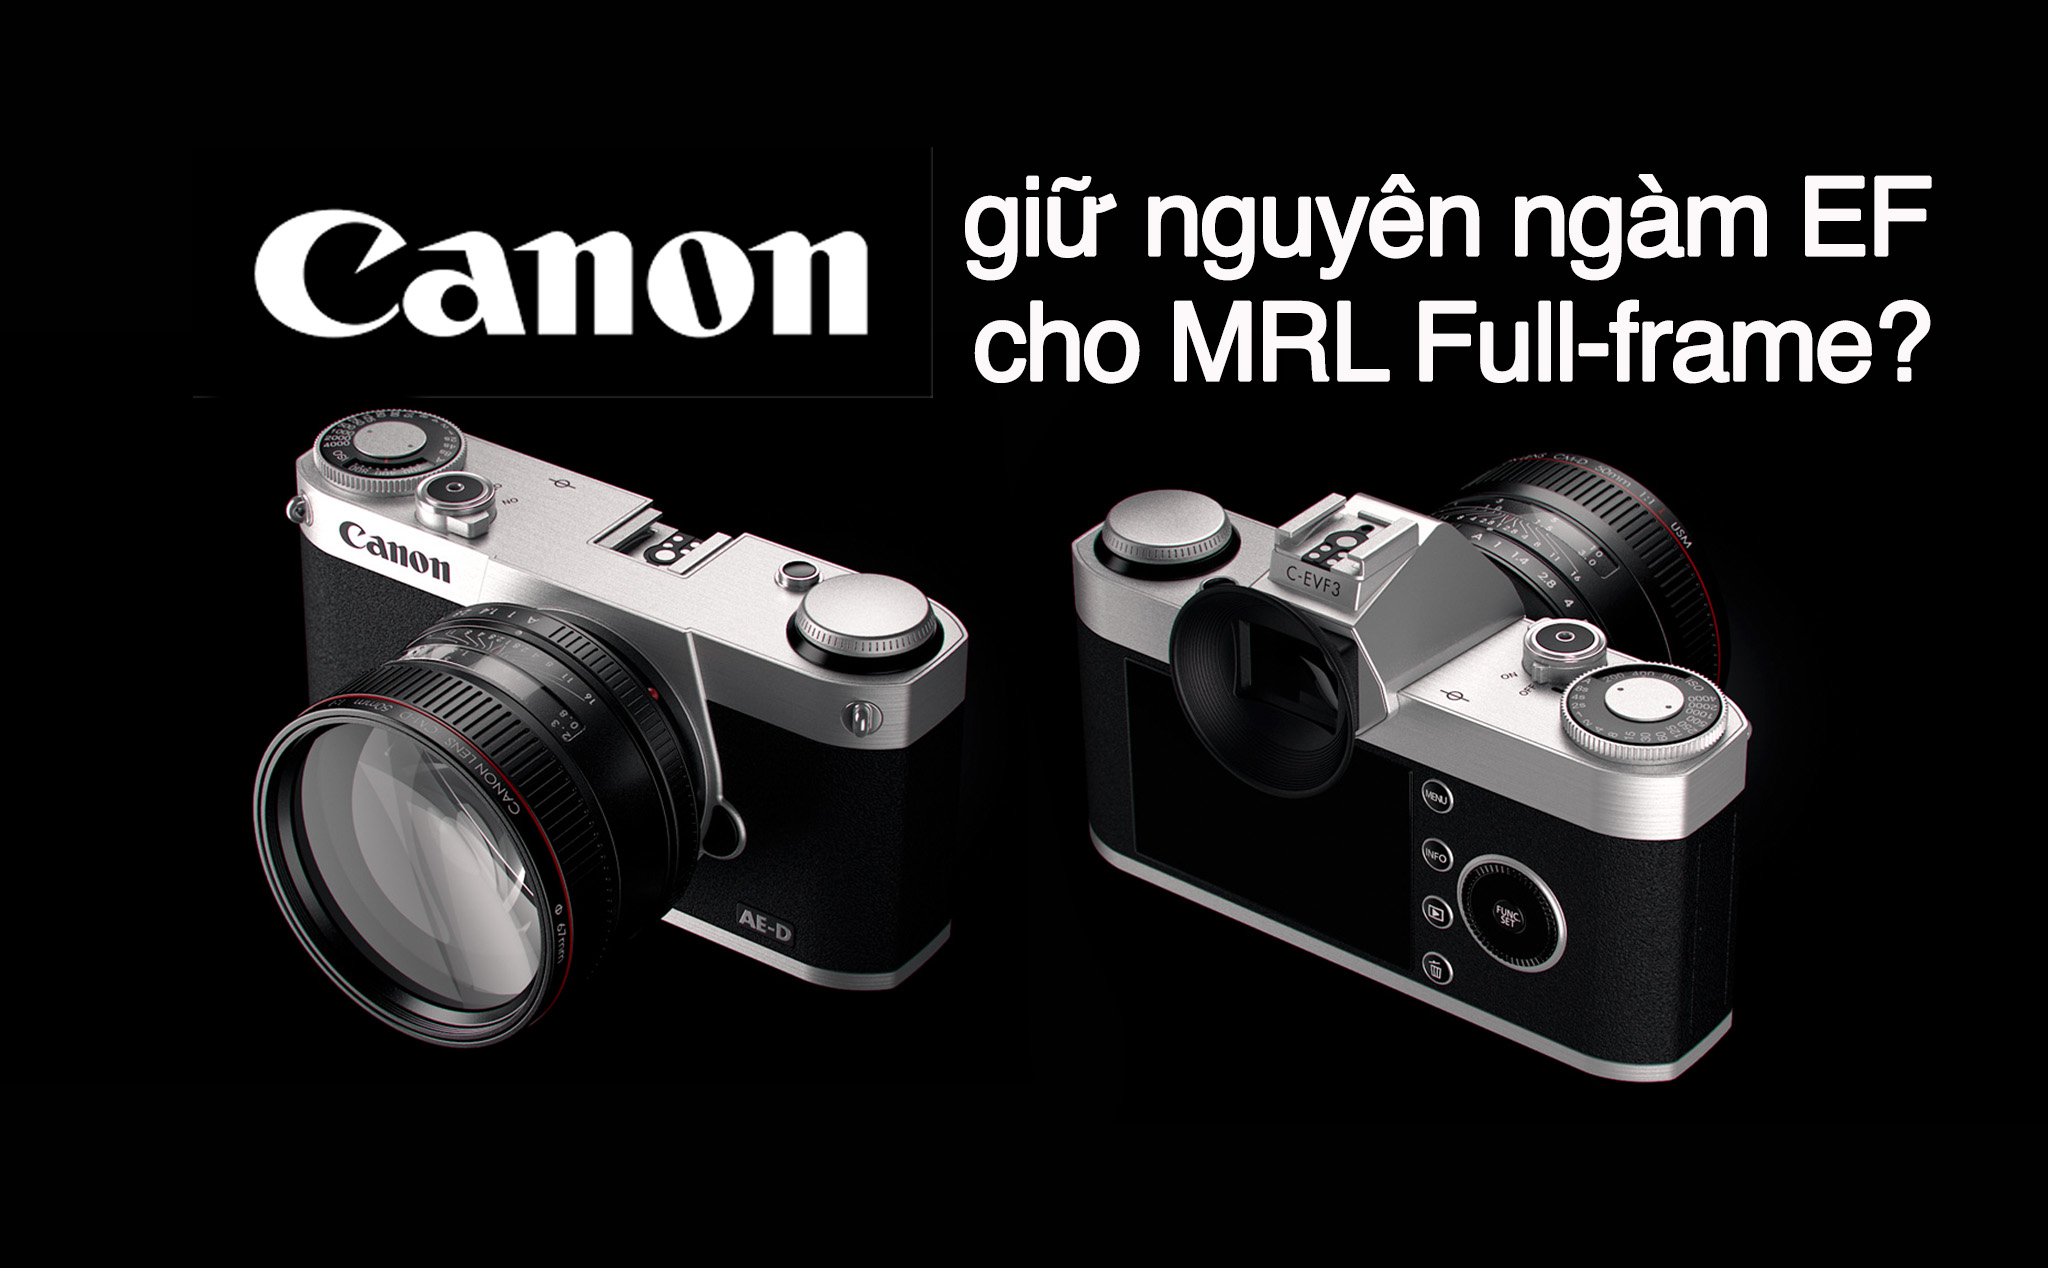 Canon Mirrorless Fullframe sẽ vẫn có ngàm EF truyền thống? [CR1]